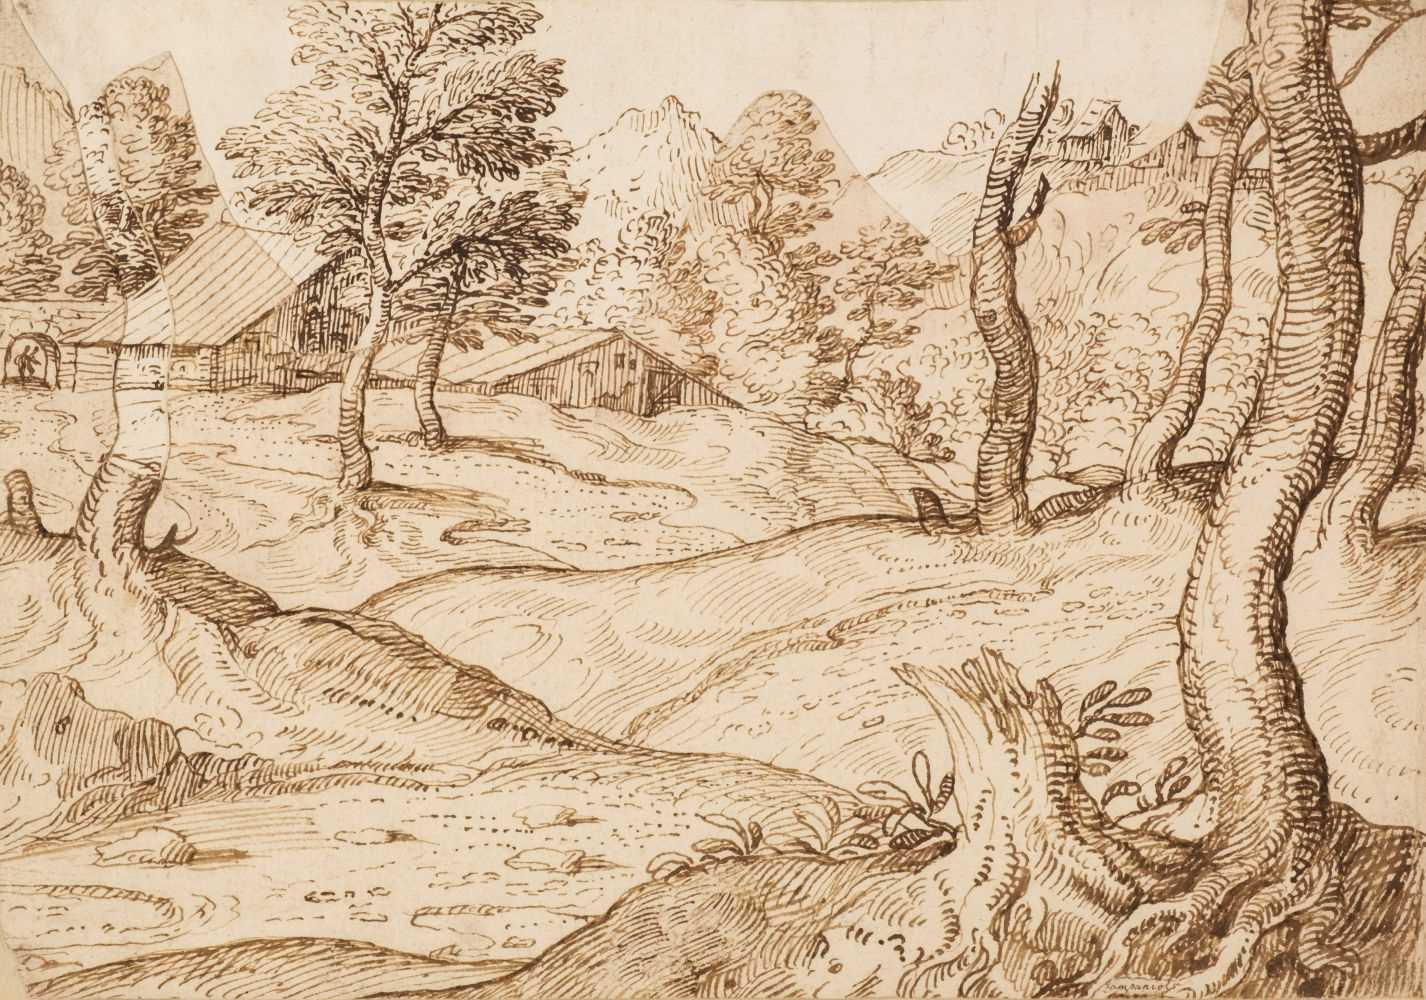 Lot 342 - Grimaldi (Giovan Francesco, Il Bolognese, 1606-1680). Landscape with rustic buildings